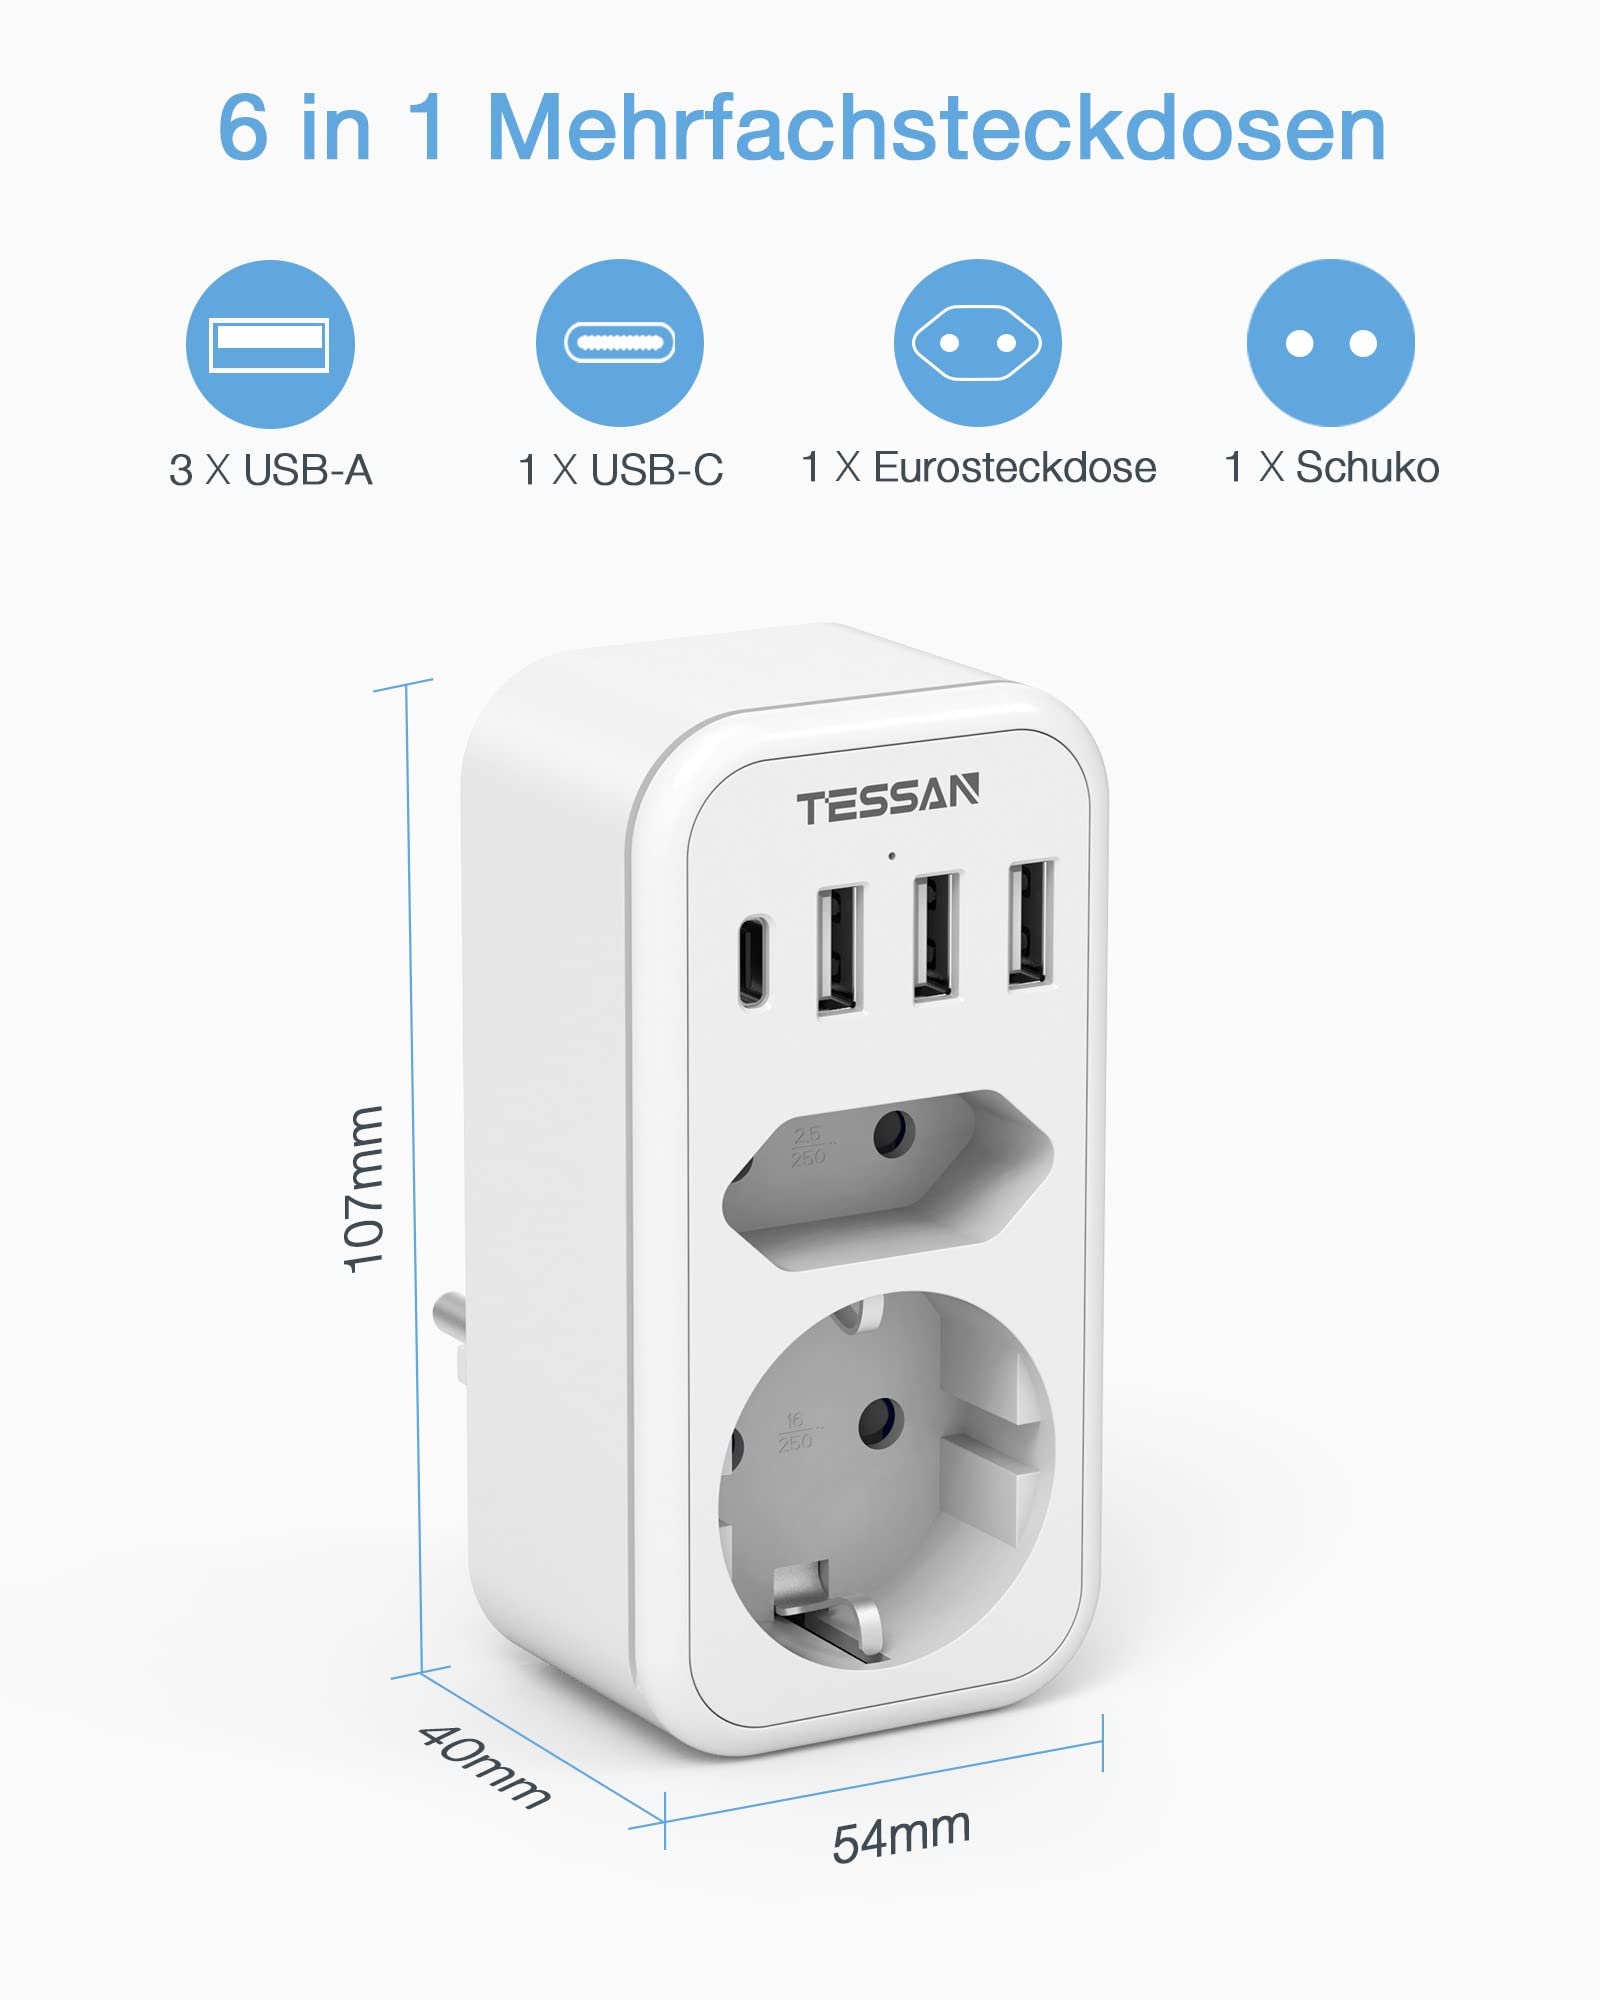 TESSAN Doppel Steckdose Adapter mit 2 Buchse, 3 USB EINE